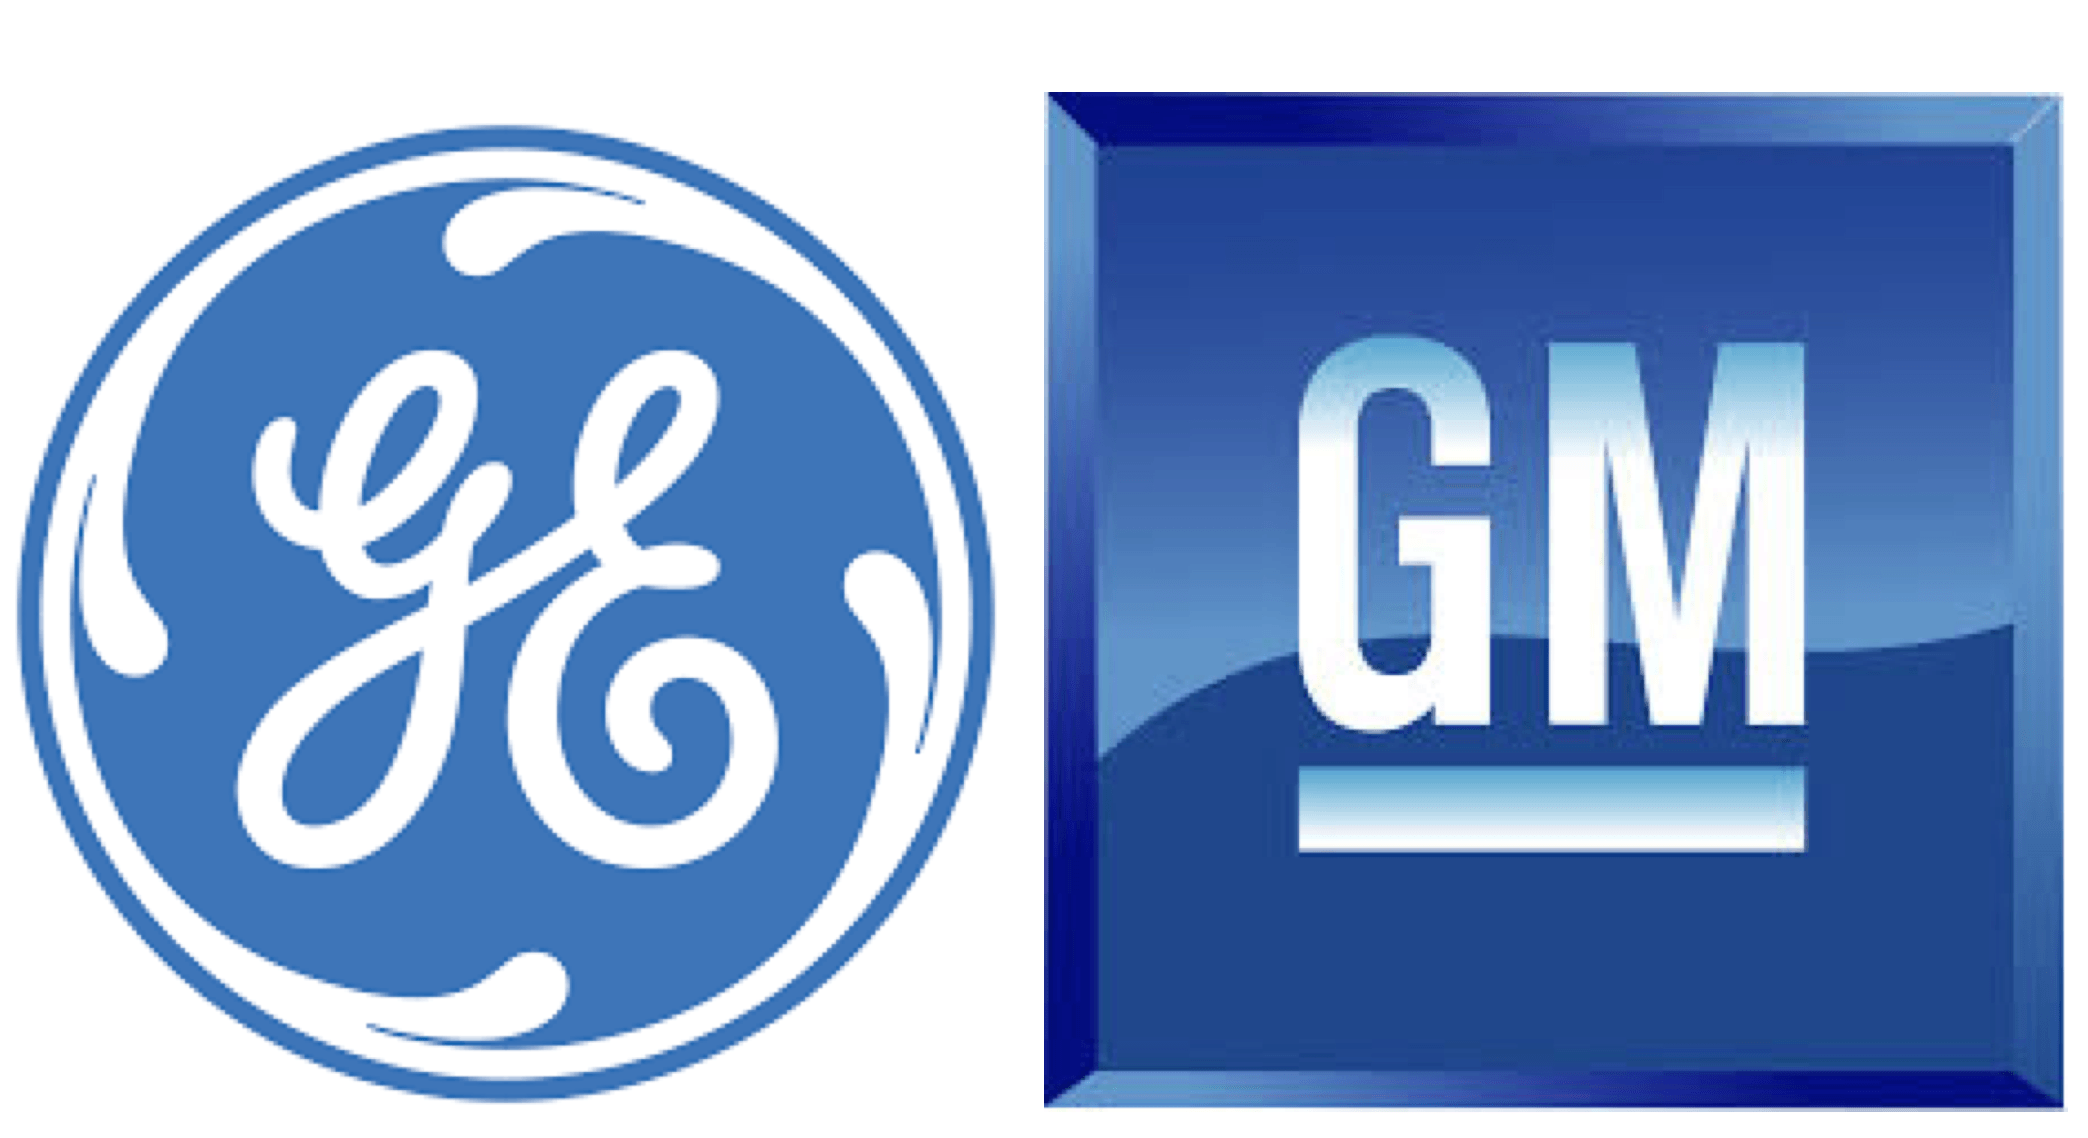 General Motors Logo - General Electric Stock Vs. General Motors Stock - Cabot Wealth Network